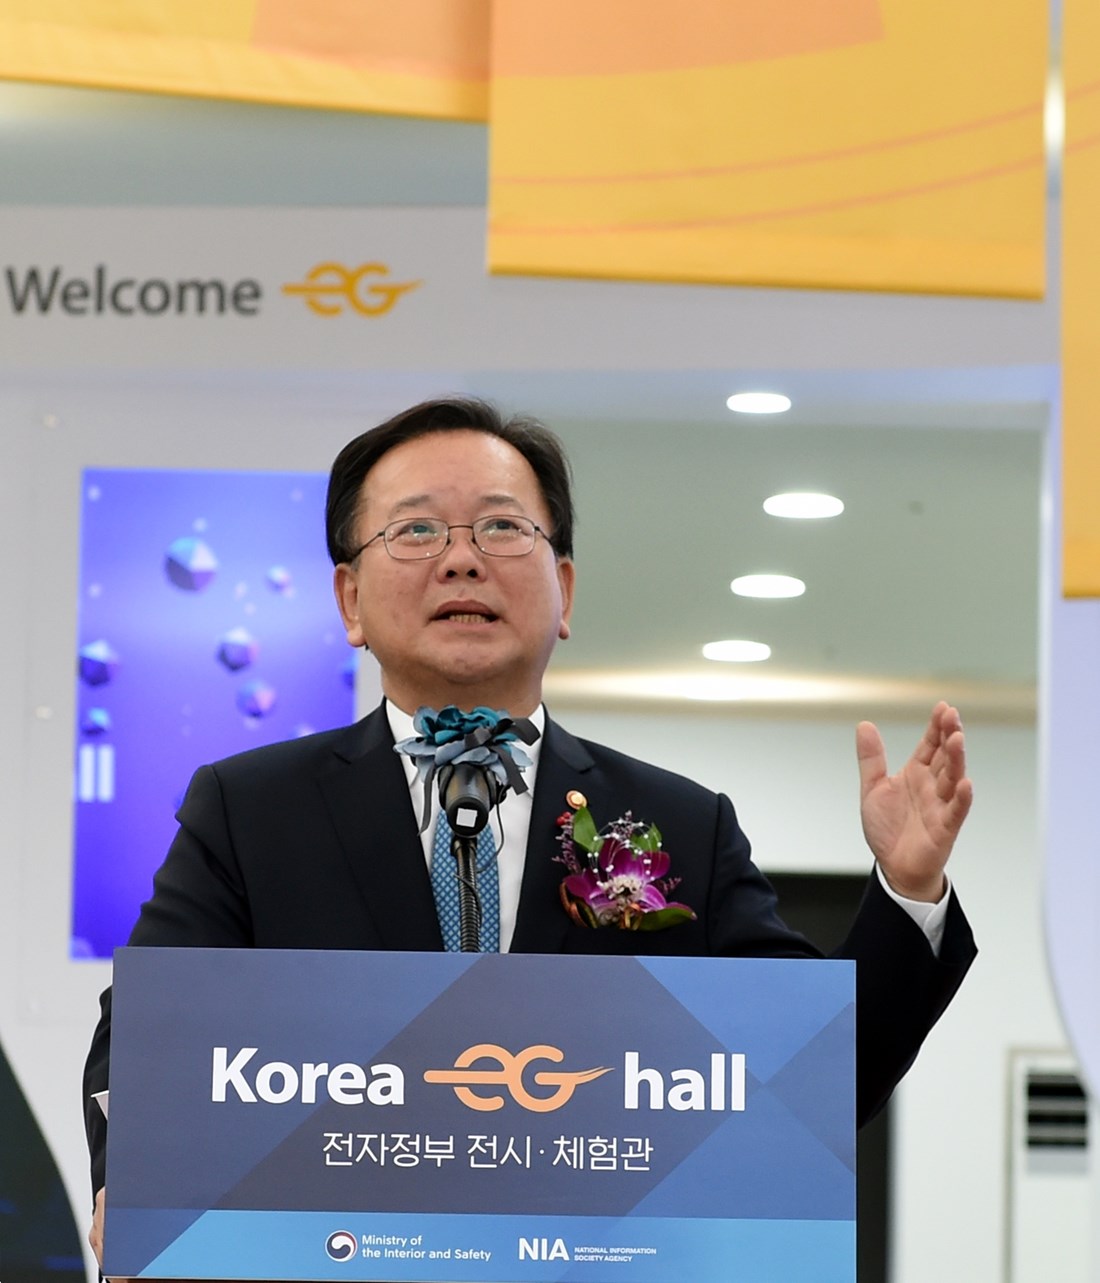 김부겸 장관이 18일 오후 정부세종컨벤션센터에서 열린 '전자정부 전시·체험관' 개관식에서 인사말을 하고 있다.